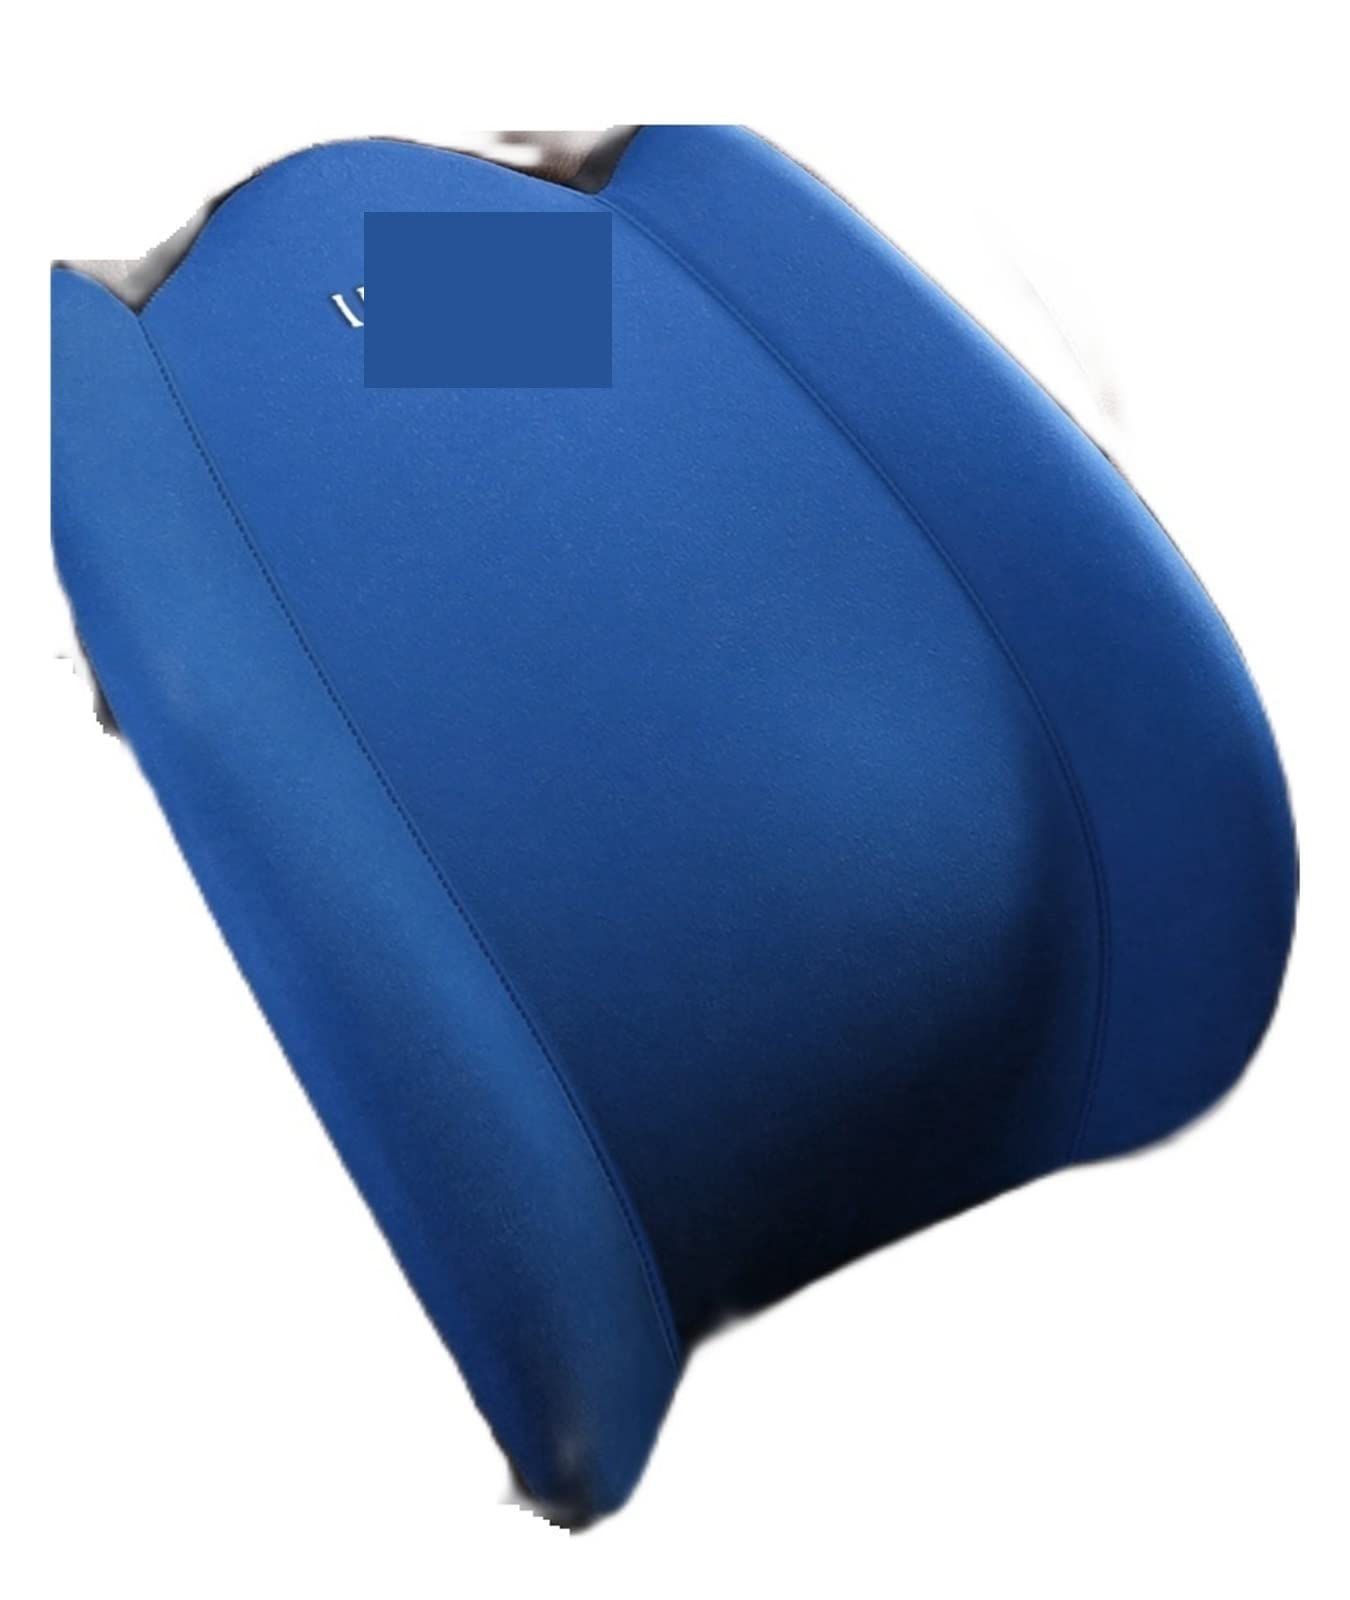 送料無料TAVENS Comfortable car Pillows Car Neck Headrest Pillow Rest Head Lumbar Support Cushion Memory Foam Slow Rebound